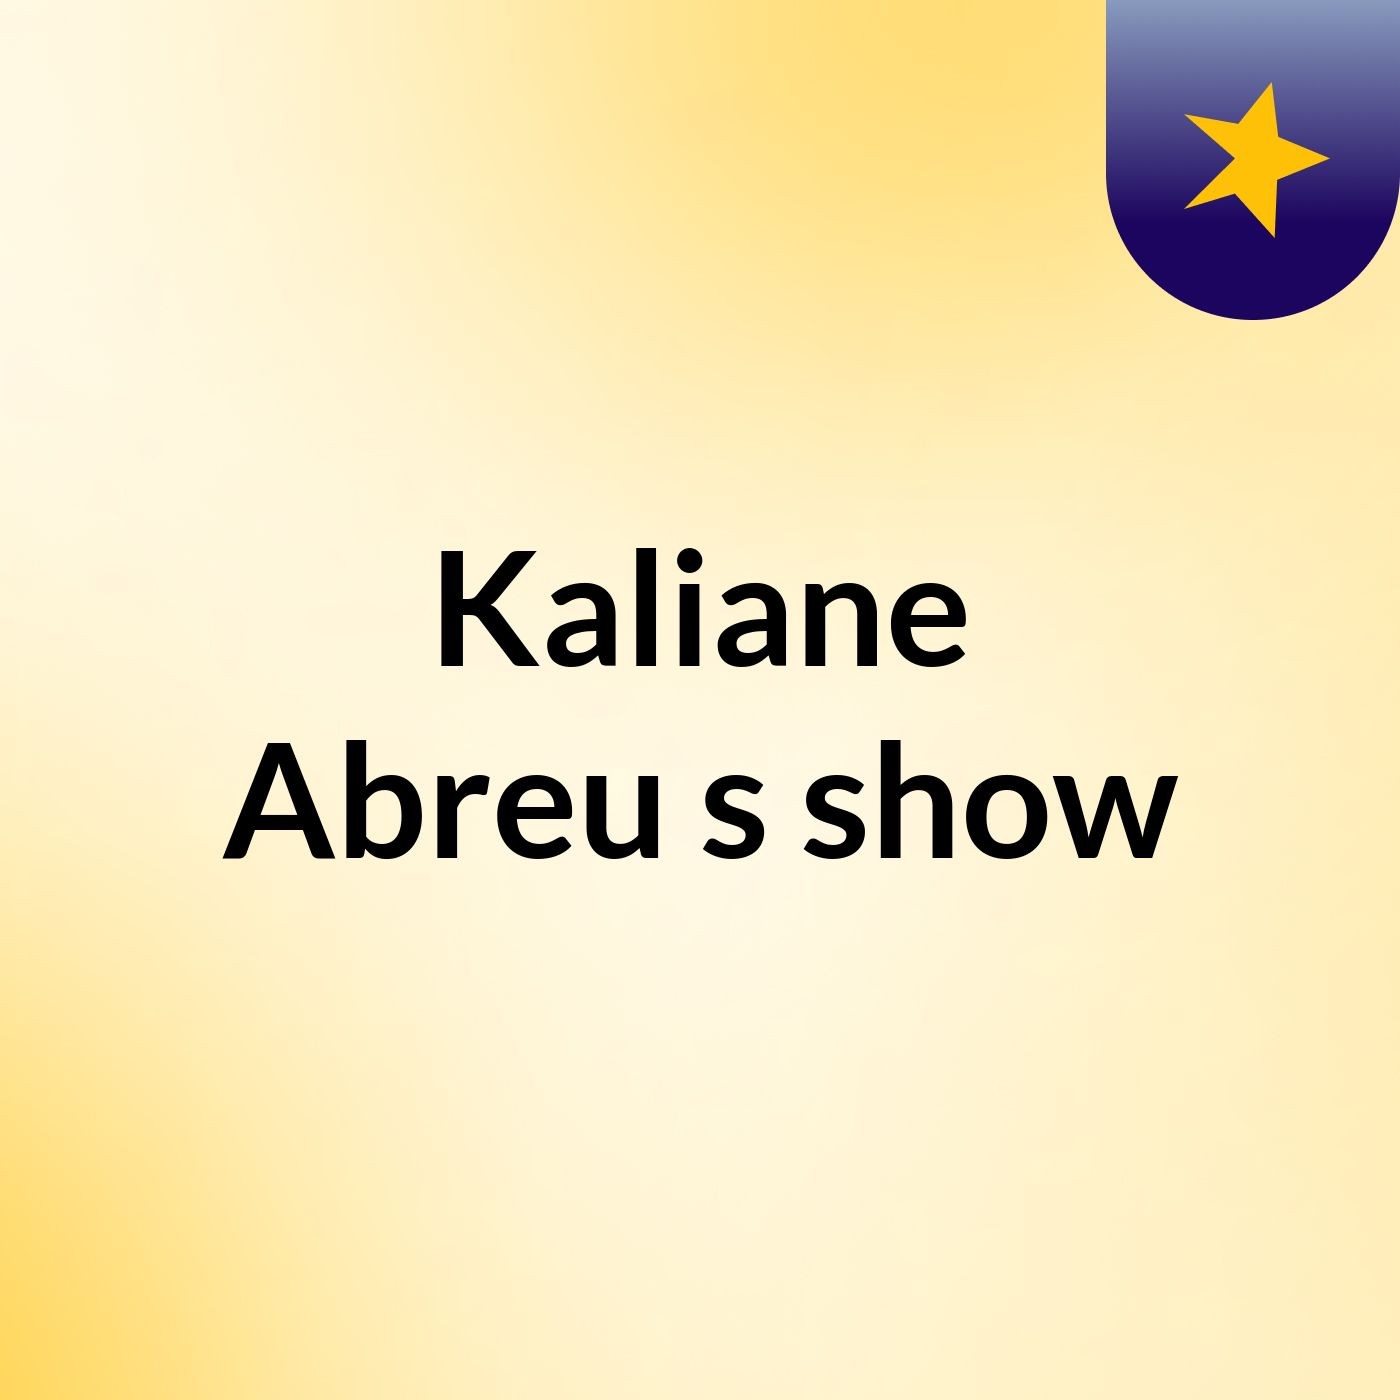 Kaliane Abreu's show